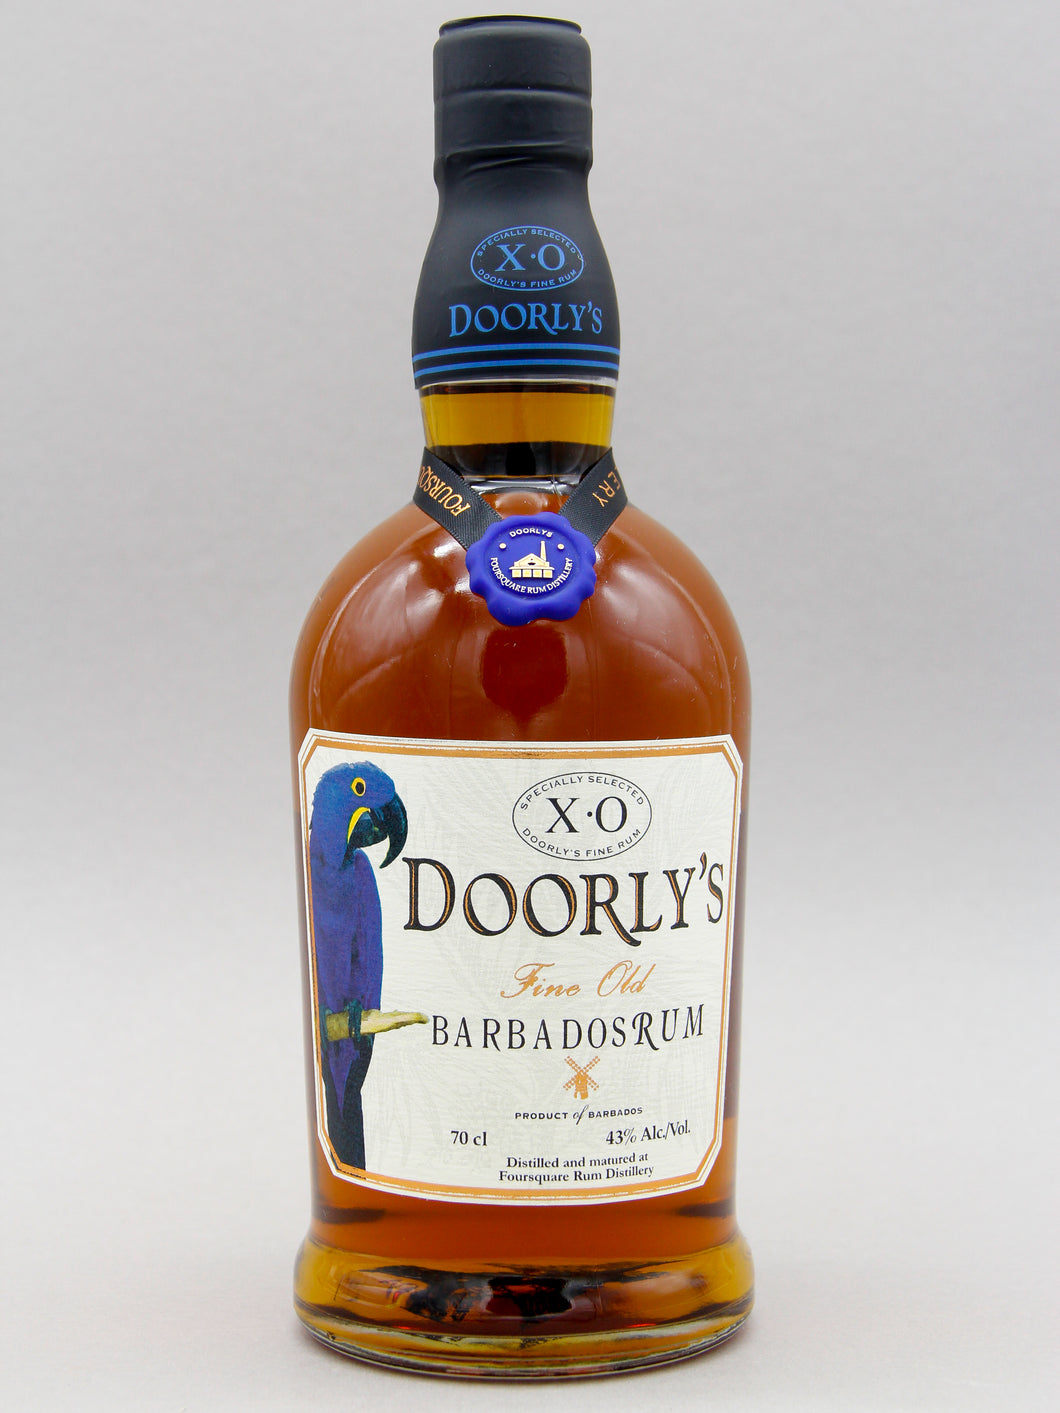 Doorly's XO, Fine Old Barbados Rum (43%, 70cl)